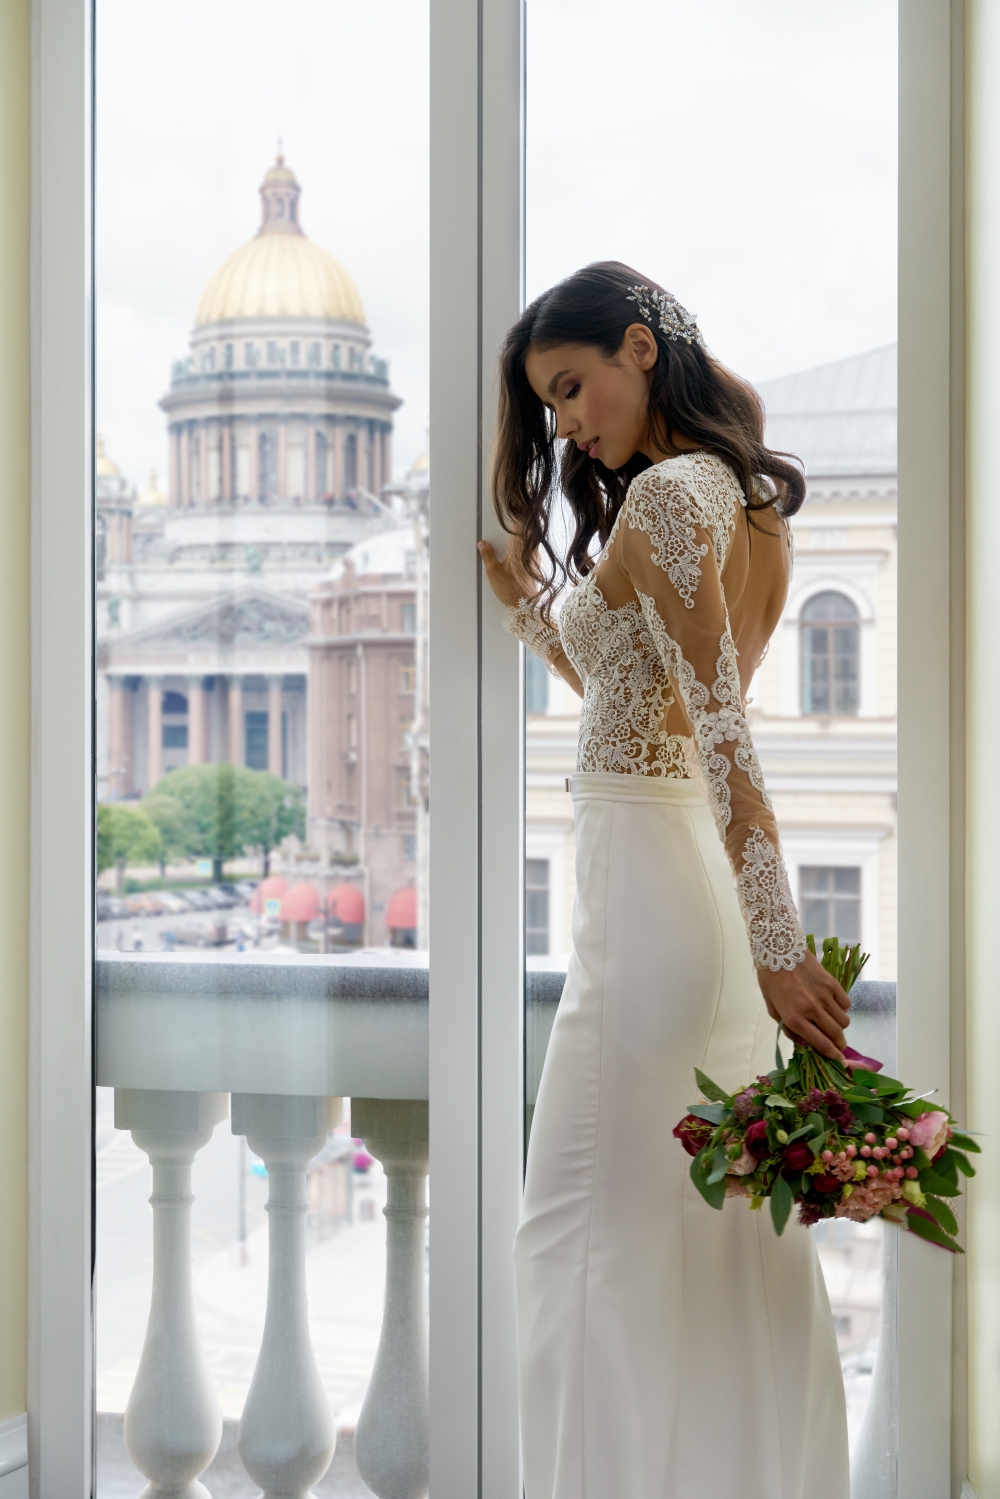 Свадьба в Lotte Hotel St. Petersburg
Фотосессия в номере отеля
